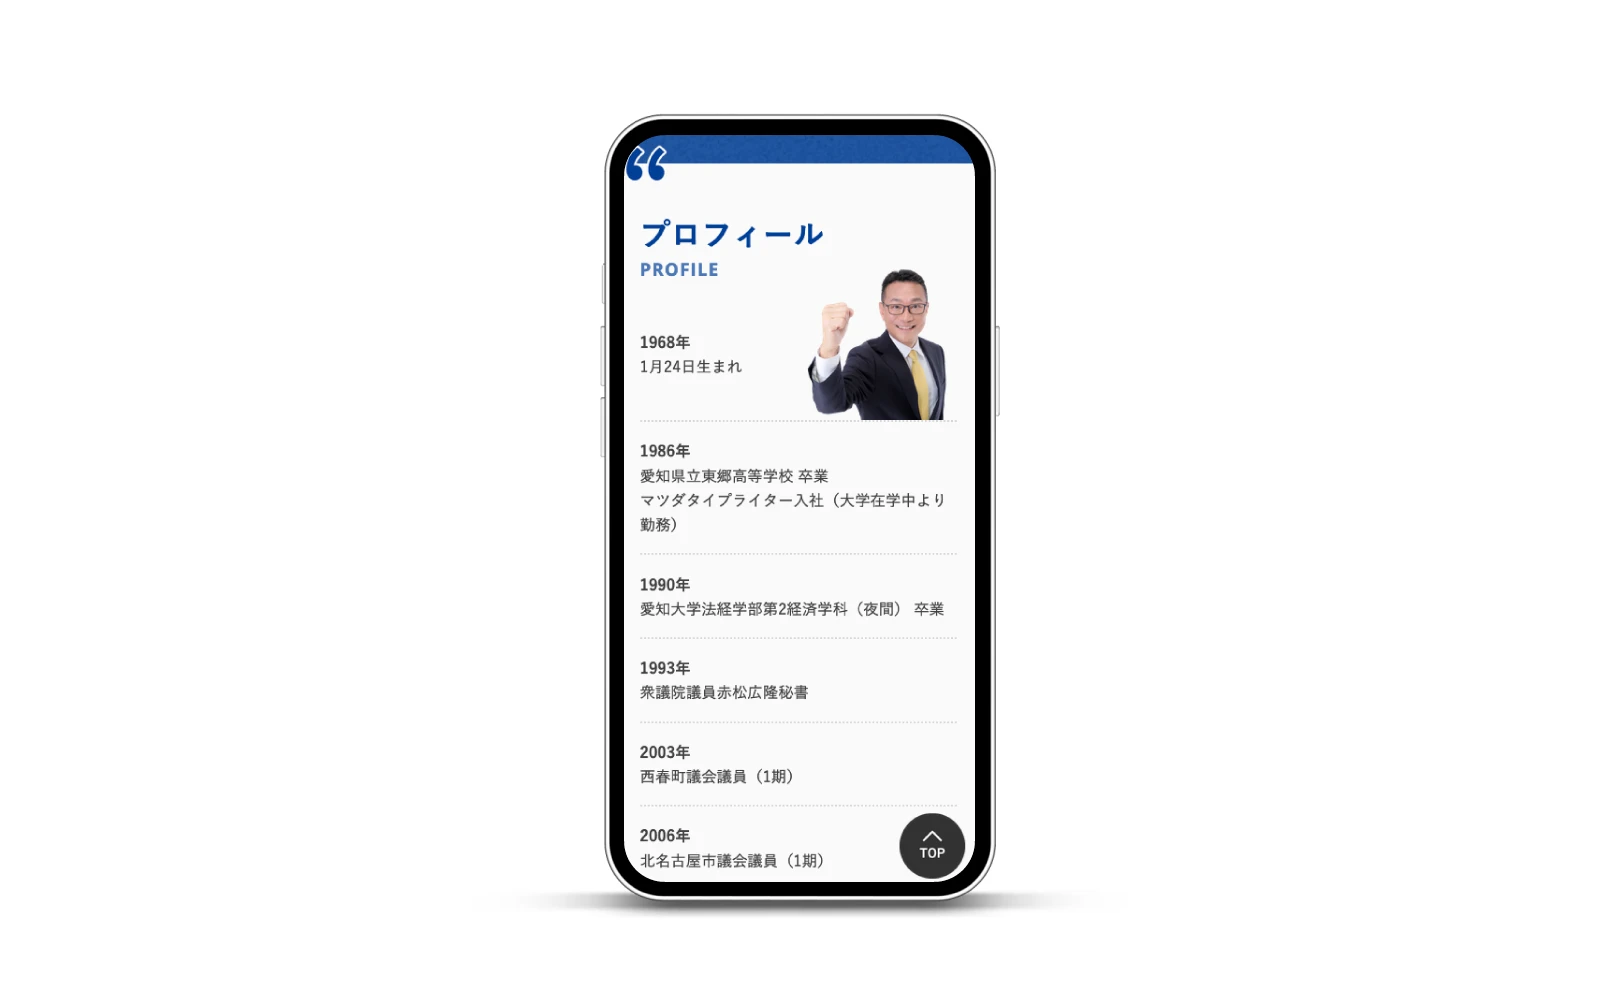 立憲民主党 松田イサオ / コーポレートサイト